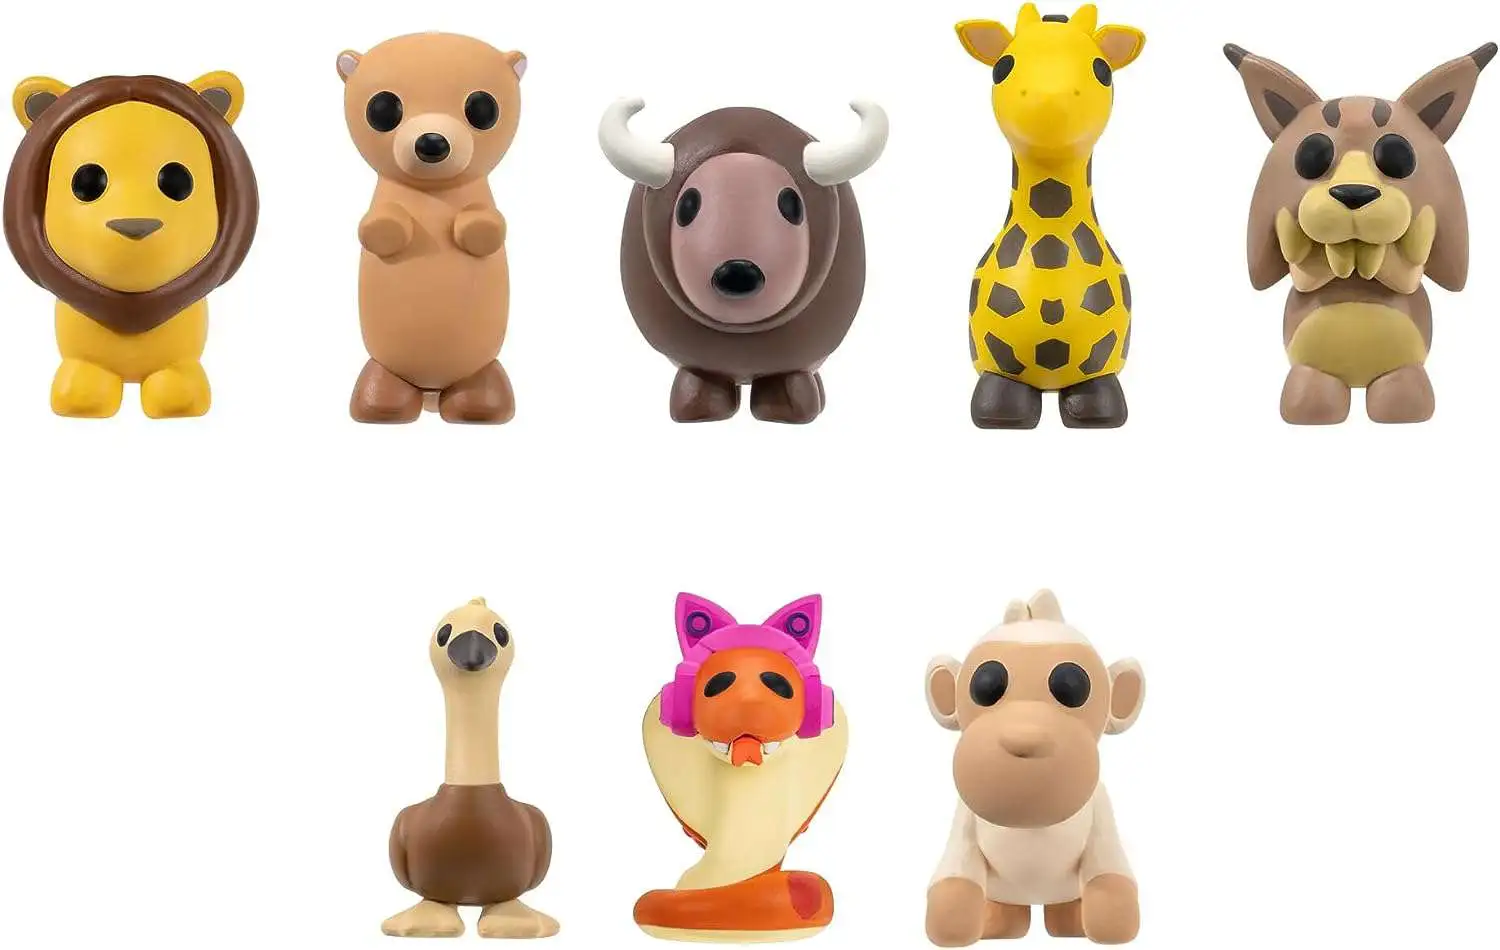 Figurine - Adopt Me! pack 6 figurines Animal Life